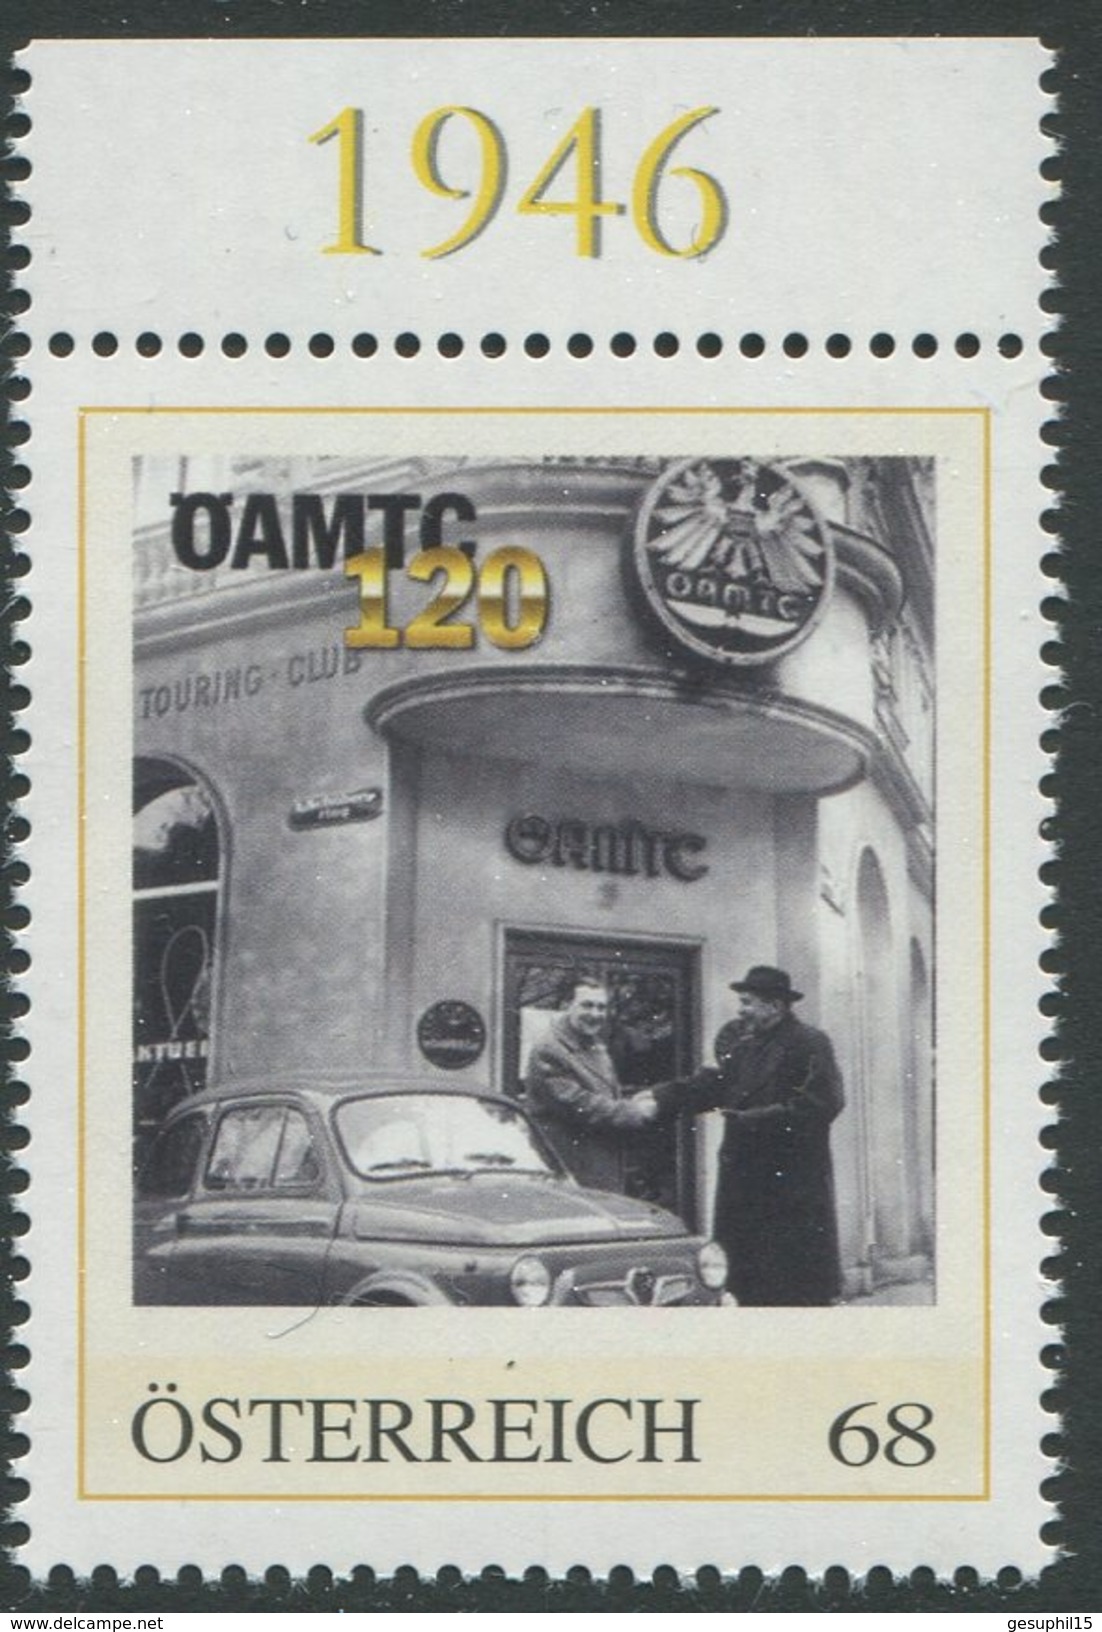 ÖSTERREICH / Personalisierte Marke 120 Jahre ÖAMTC / Postfrisch / ** / MNH - Personalisierte Briefmarken